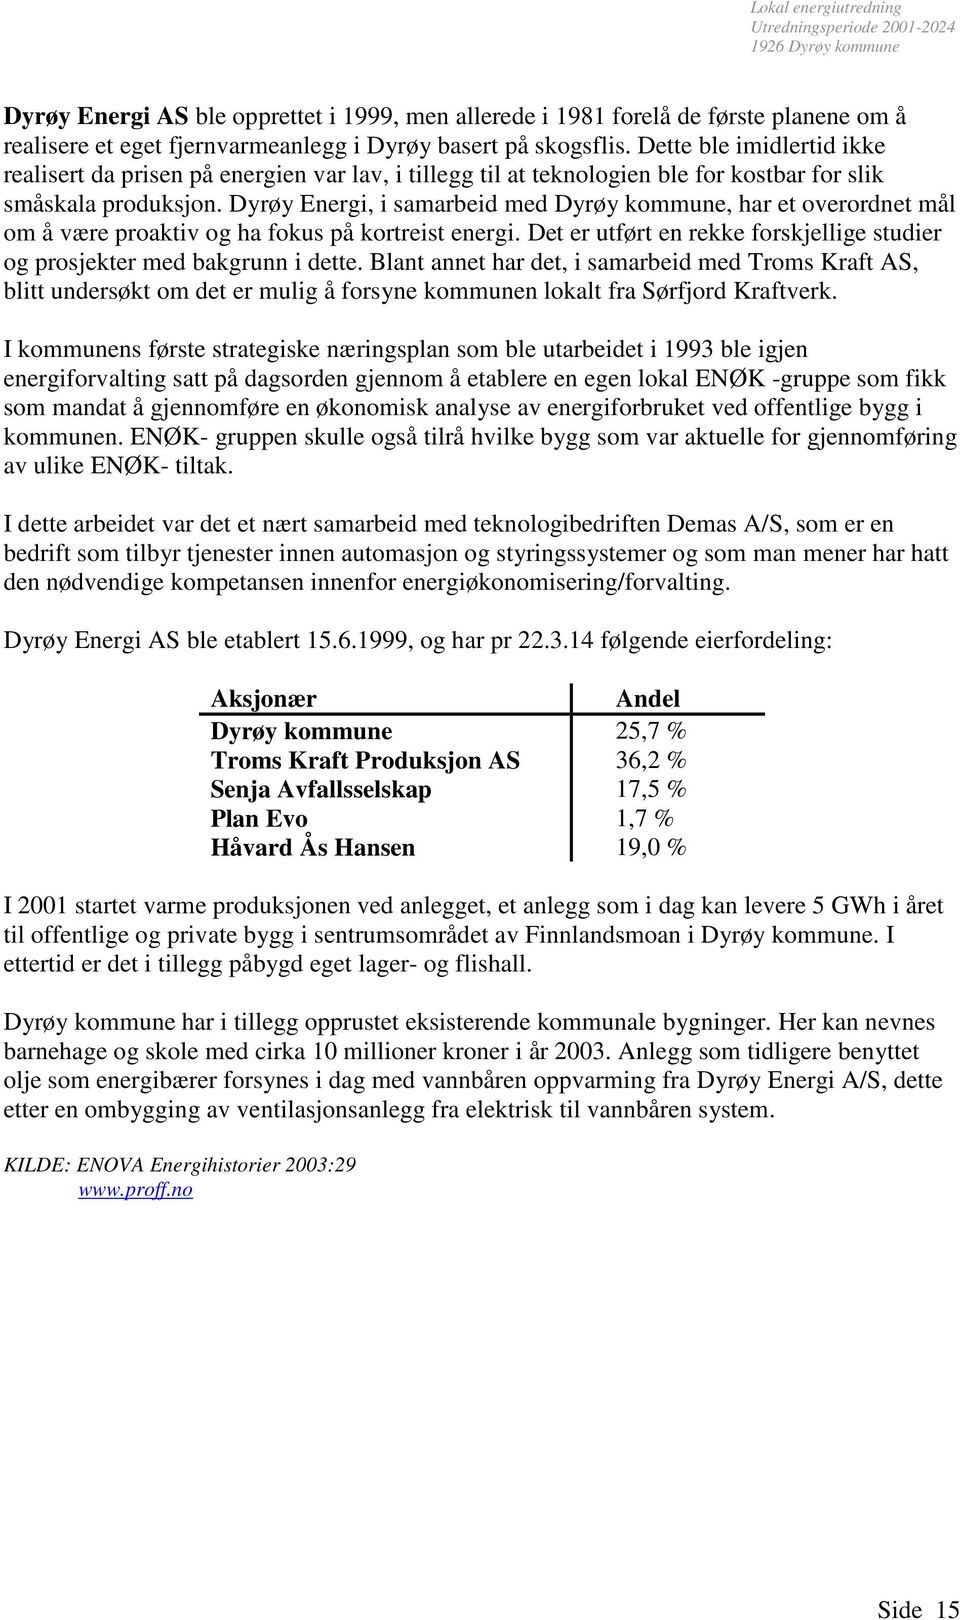 Dyrøy Energi, i samarbeid med Dyrøy kommune, har et overordnet mål om å være proaktiv og ha fokus på kortreist energi. Det er utført en rekke forskjellige studier og prosjekter med bakgrunn i dette.